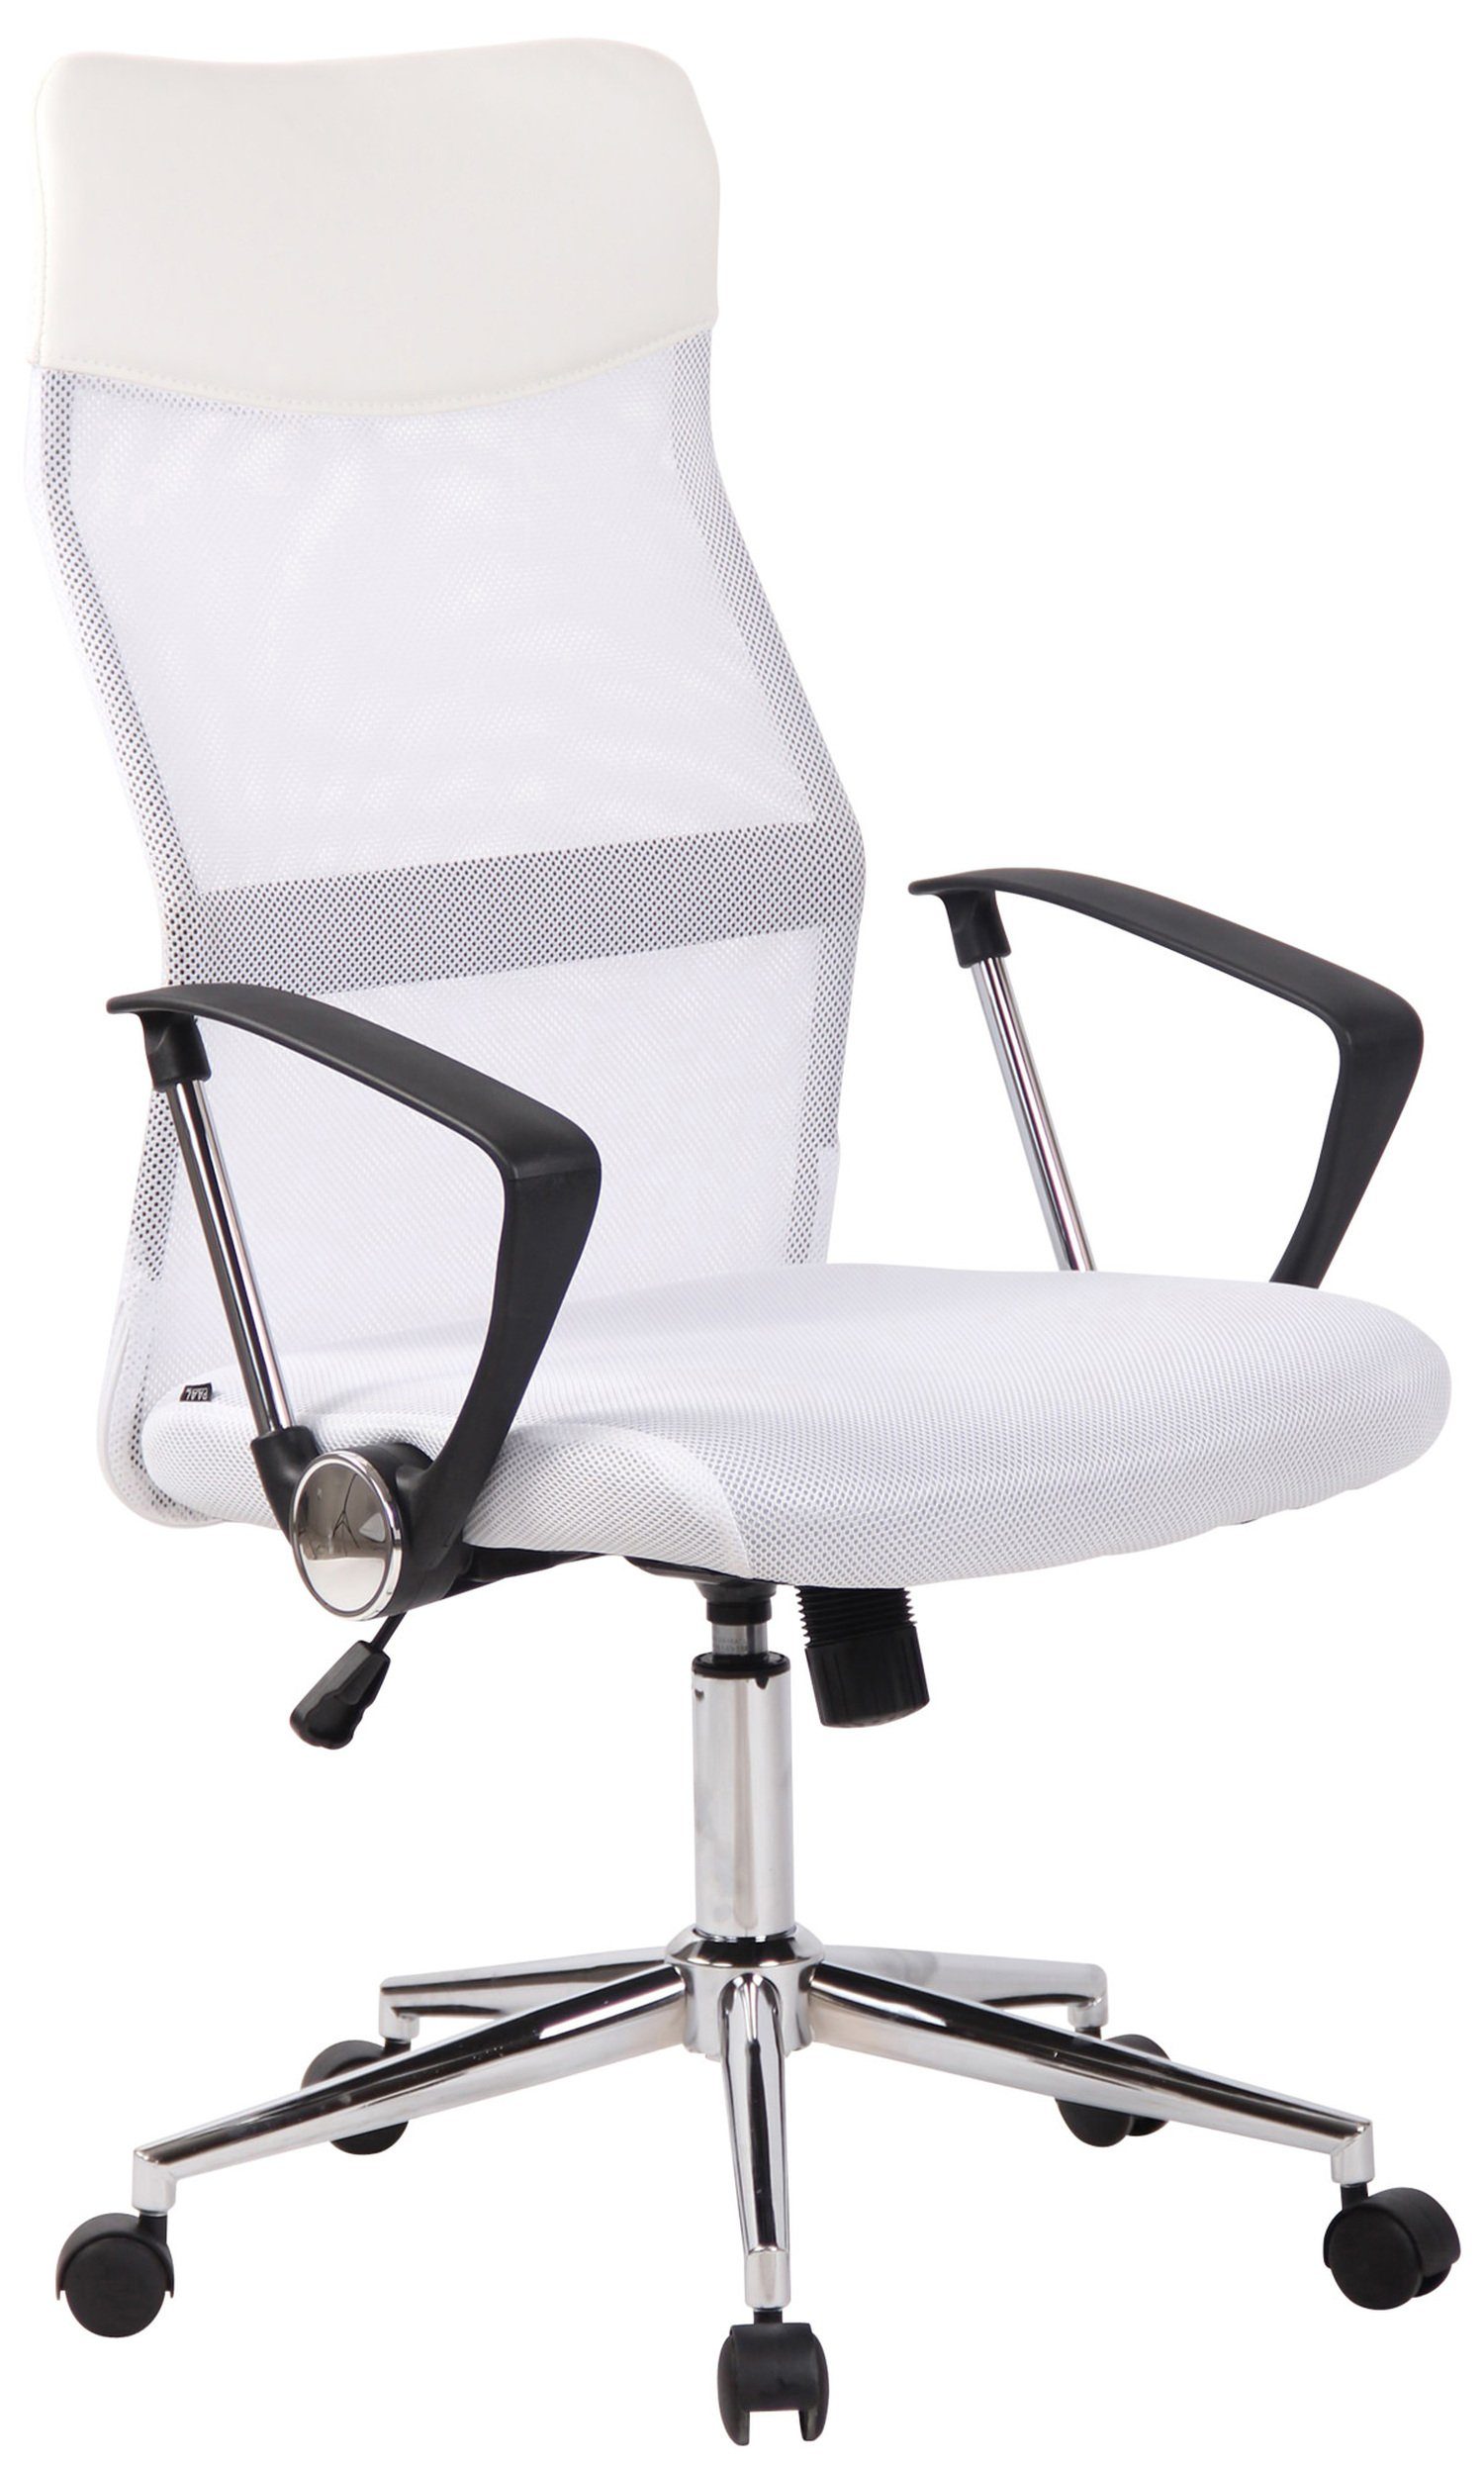 TPFLiving Bürostuhl Cordoba mit bequemer Rückenlehne - höhenverstellbar und 360° drehbar (Schreibtischstuhl, Drehstuhl, Chefsessel, Bürostuhl XXL), Gestell: Metall chrom - Sitz: Netzbezug weiß